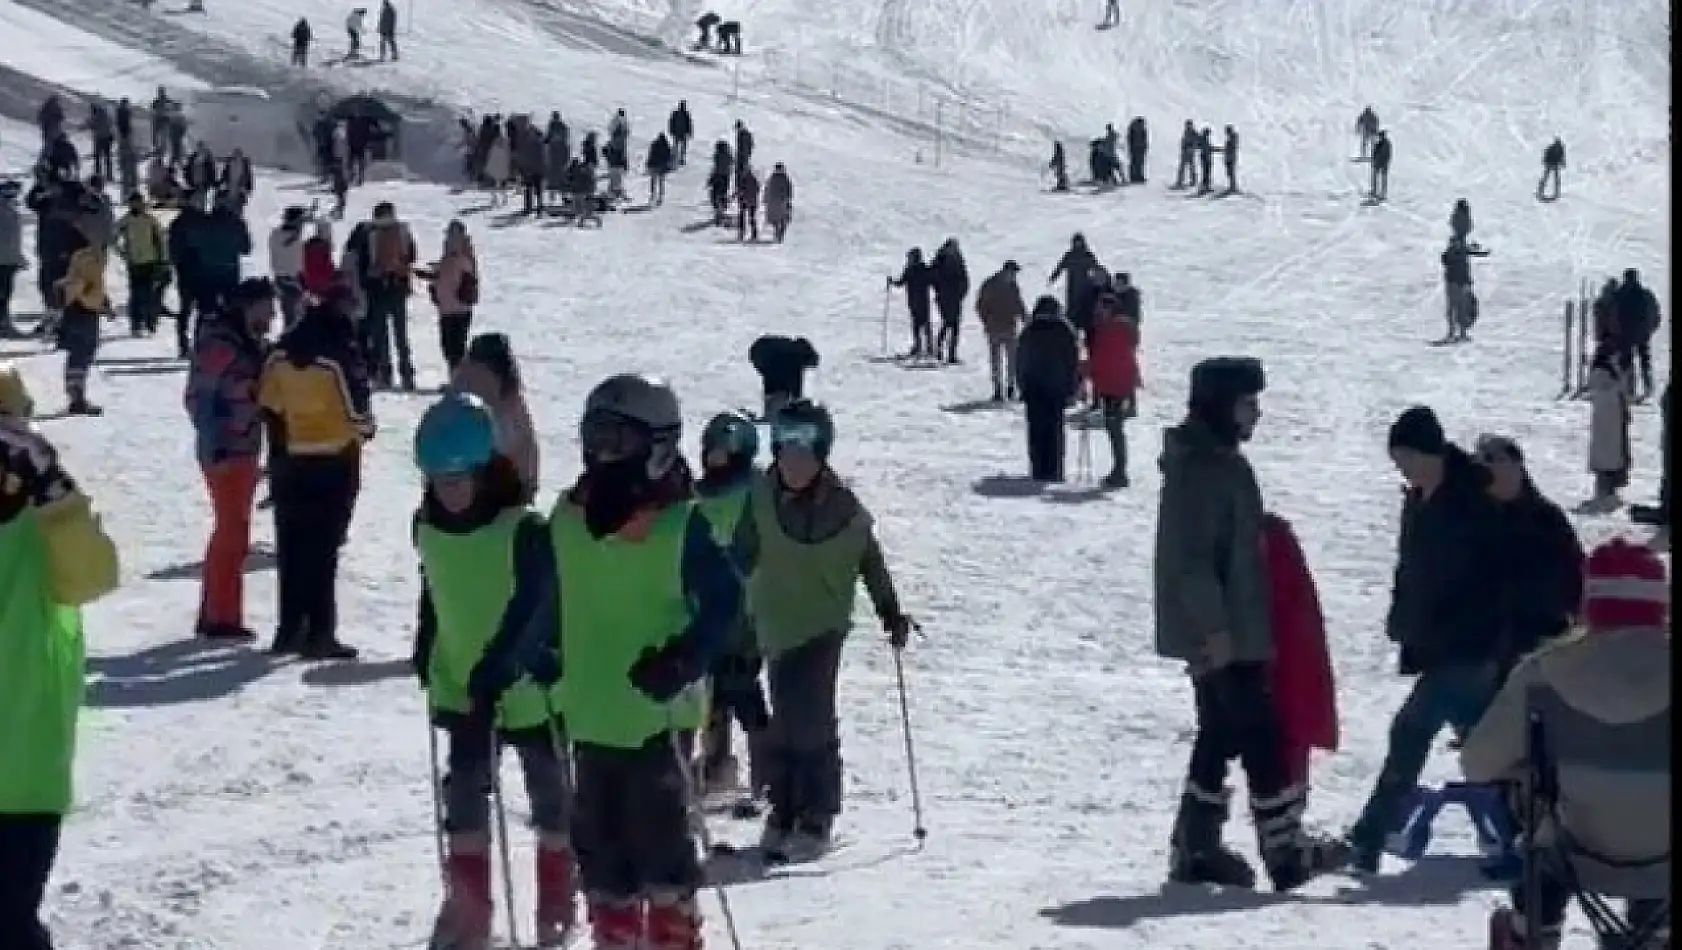 Hakkari'de kayak severler bir araya geldi